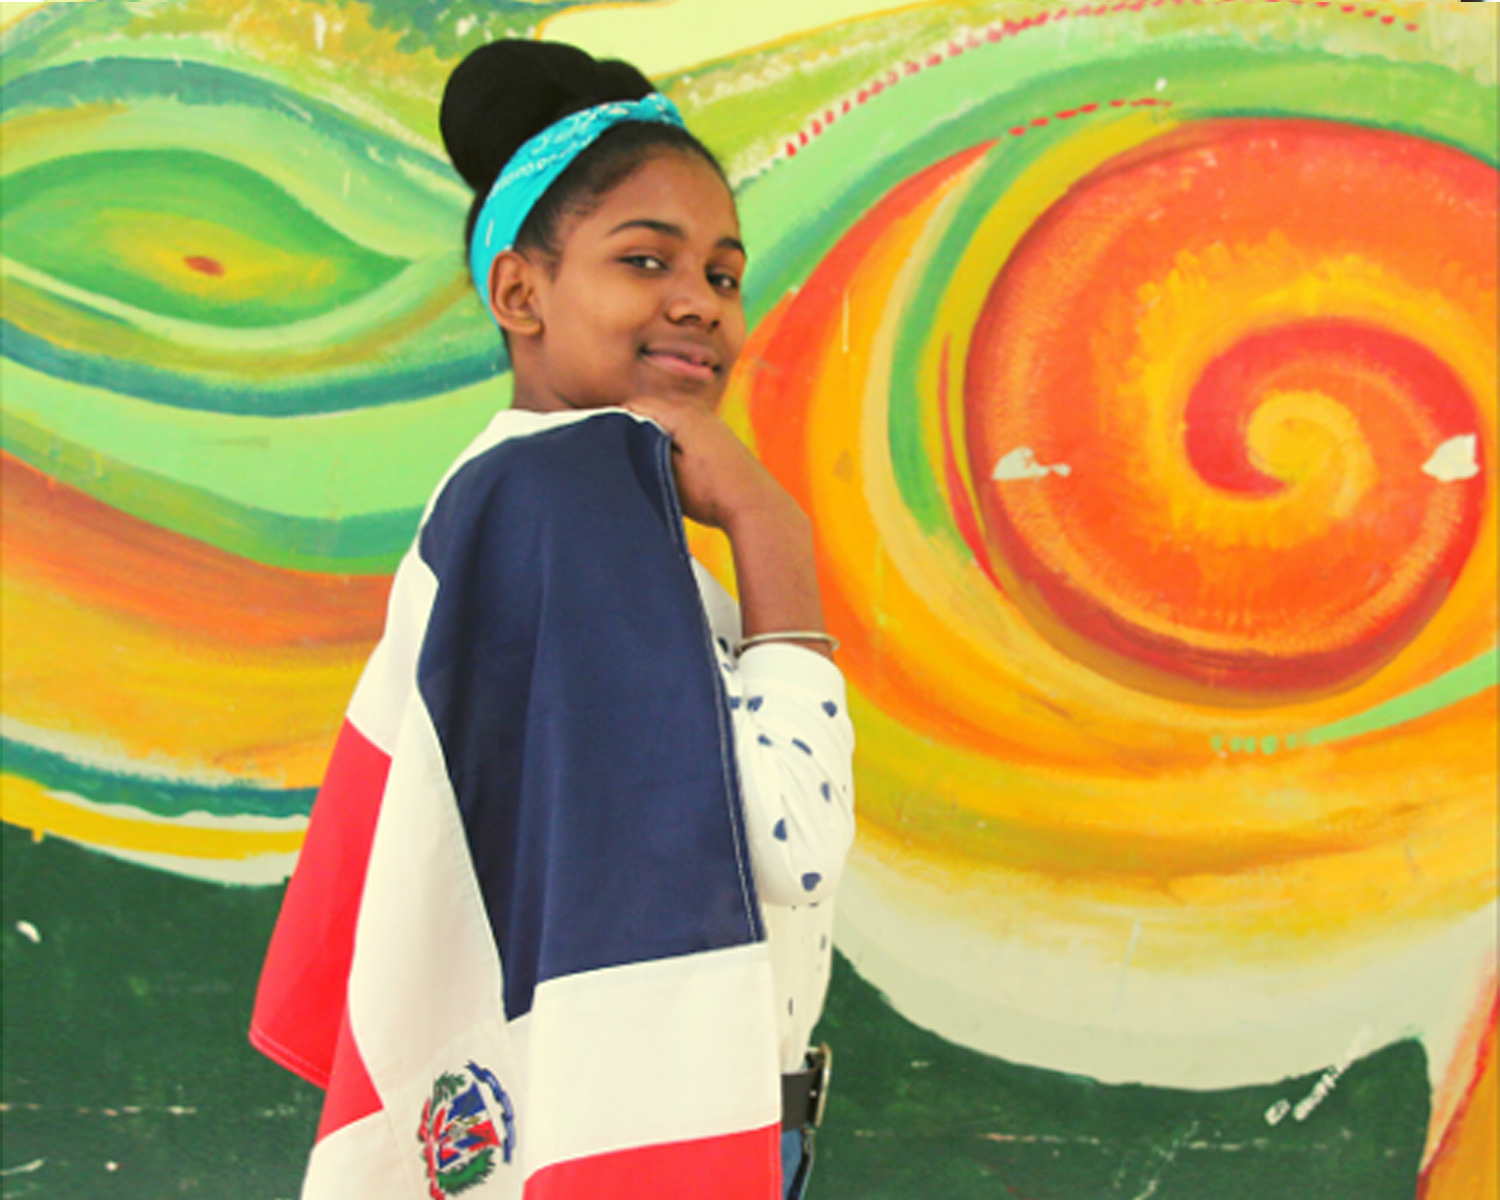 Muchacha joven envuelta en bandera de República Dominicana, fondo mural de colores.